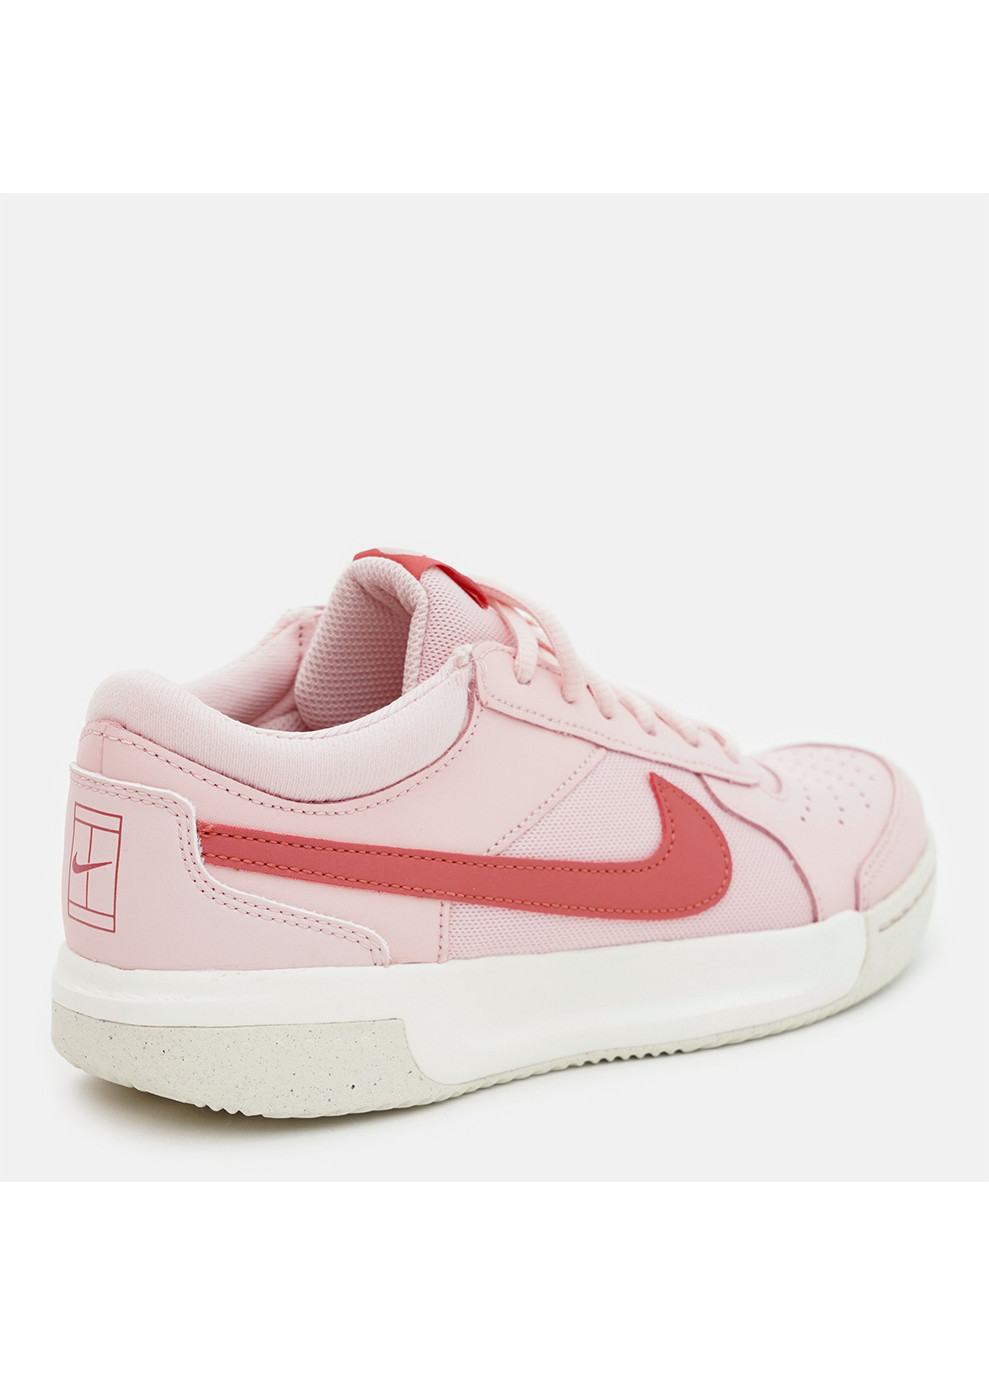 Розовые демисезонные кросcовки жен, zoom court lite 3 Nike